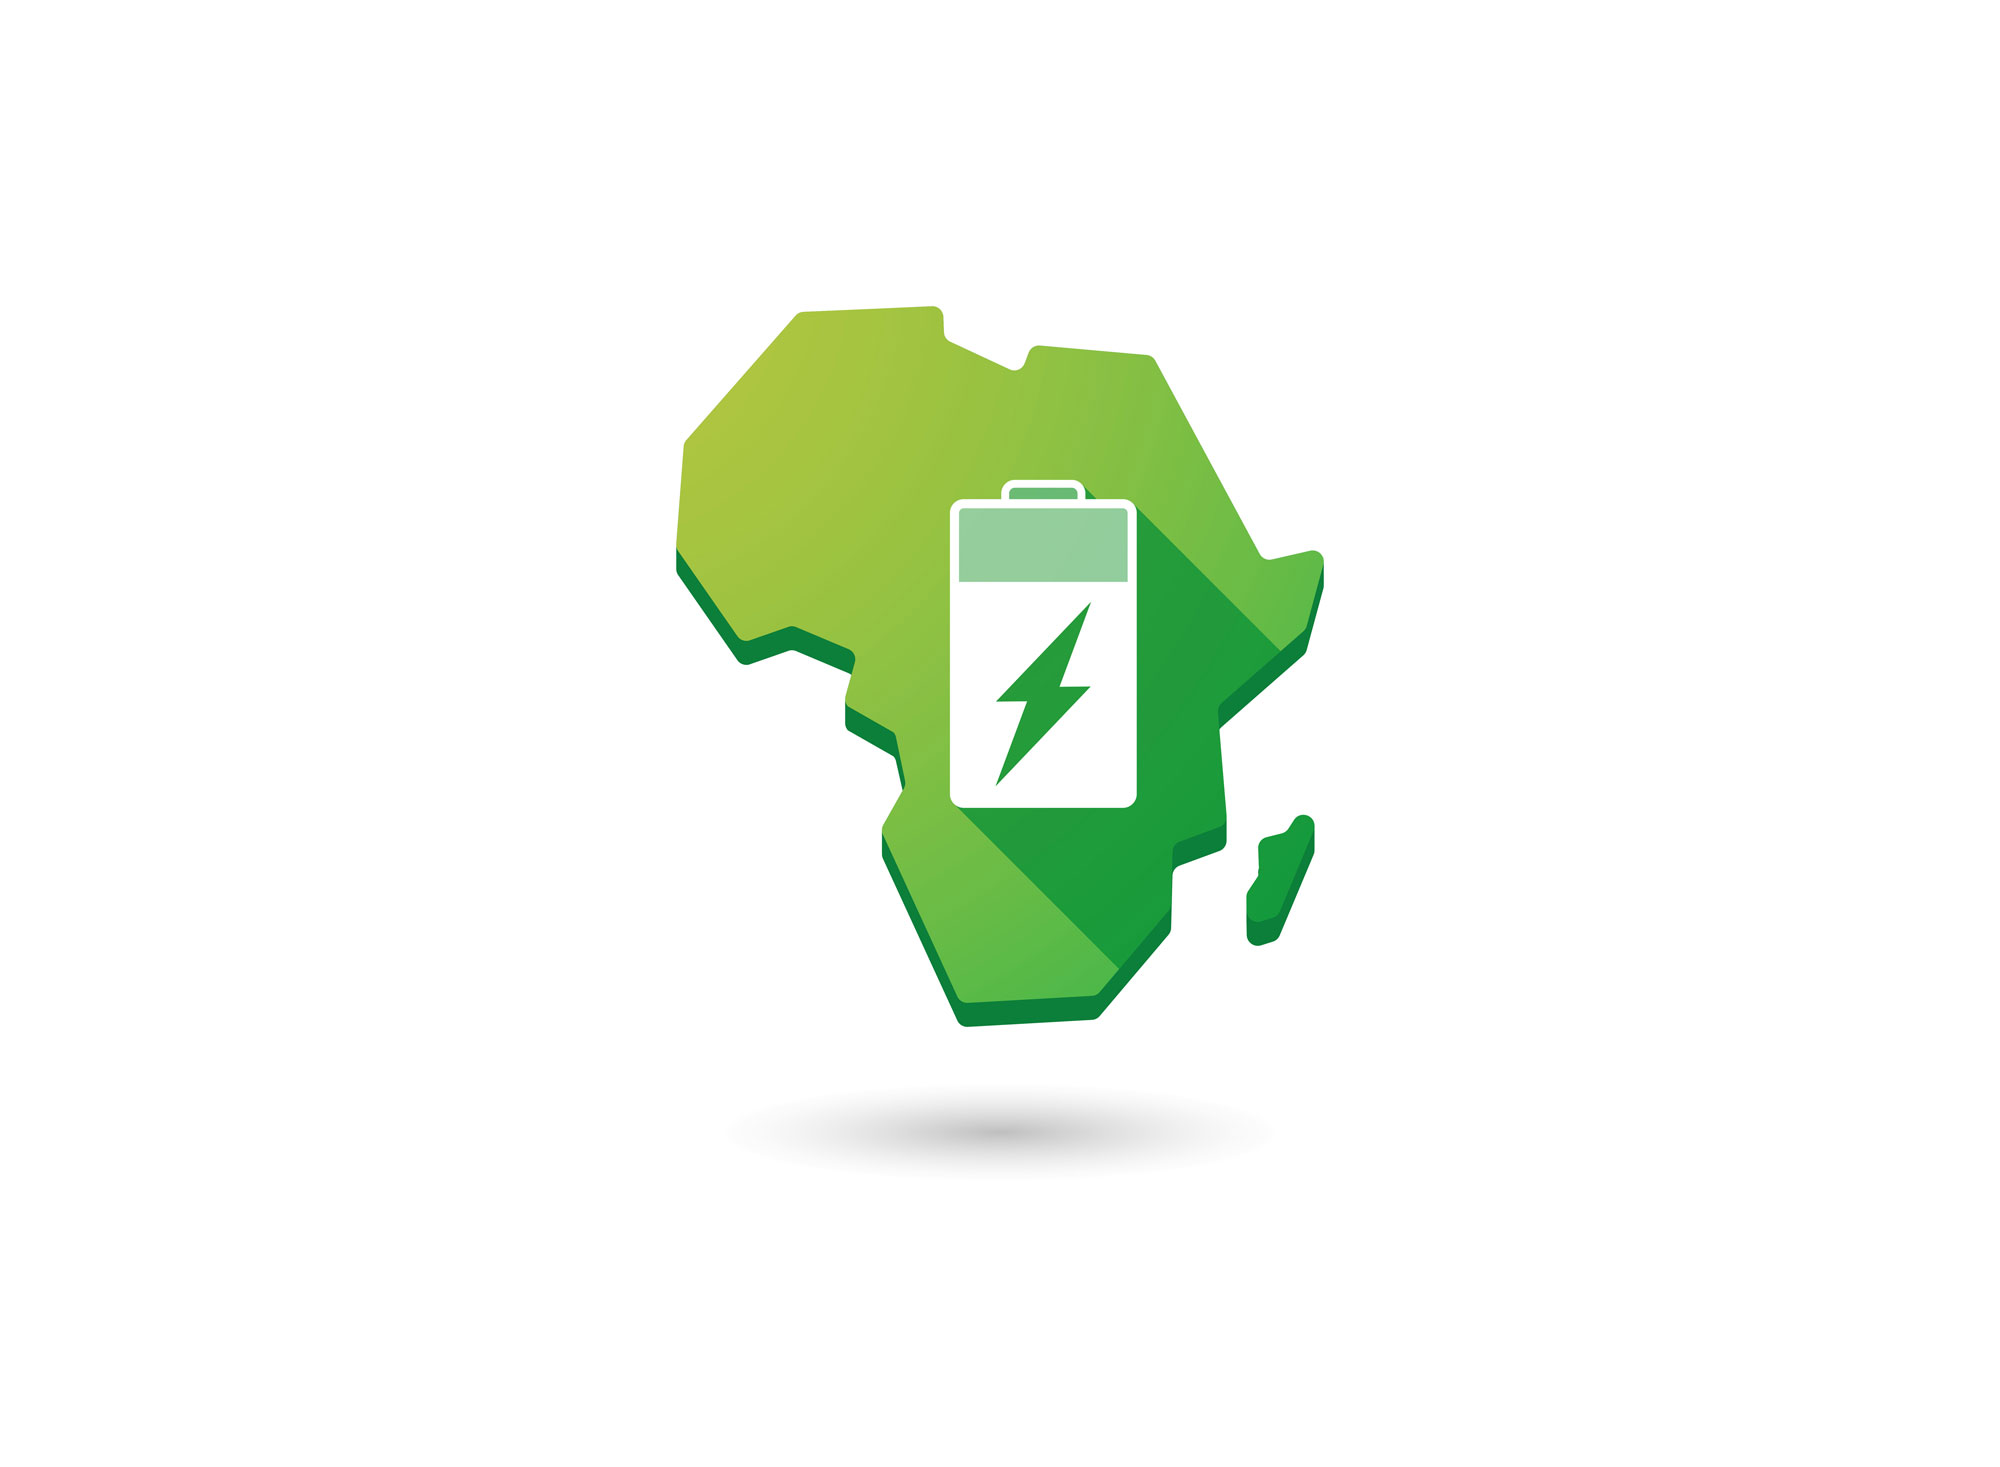 Produire de l'électricité verte sur le continent africain est une enjeu pour différentes ONG.